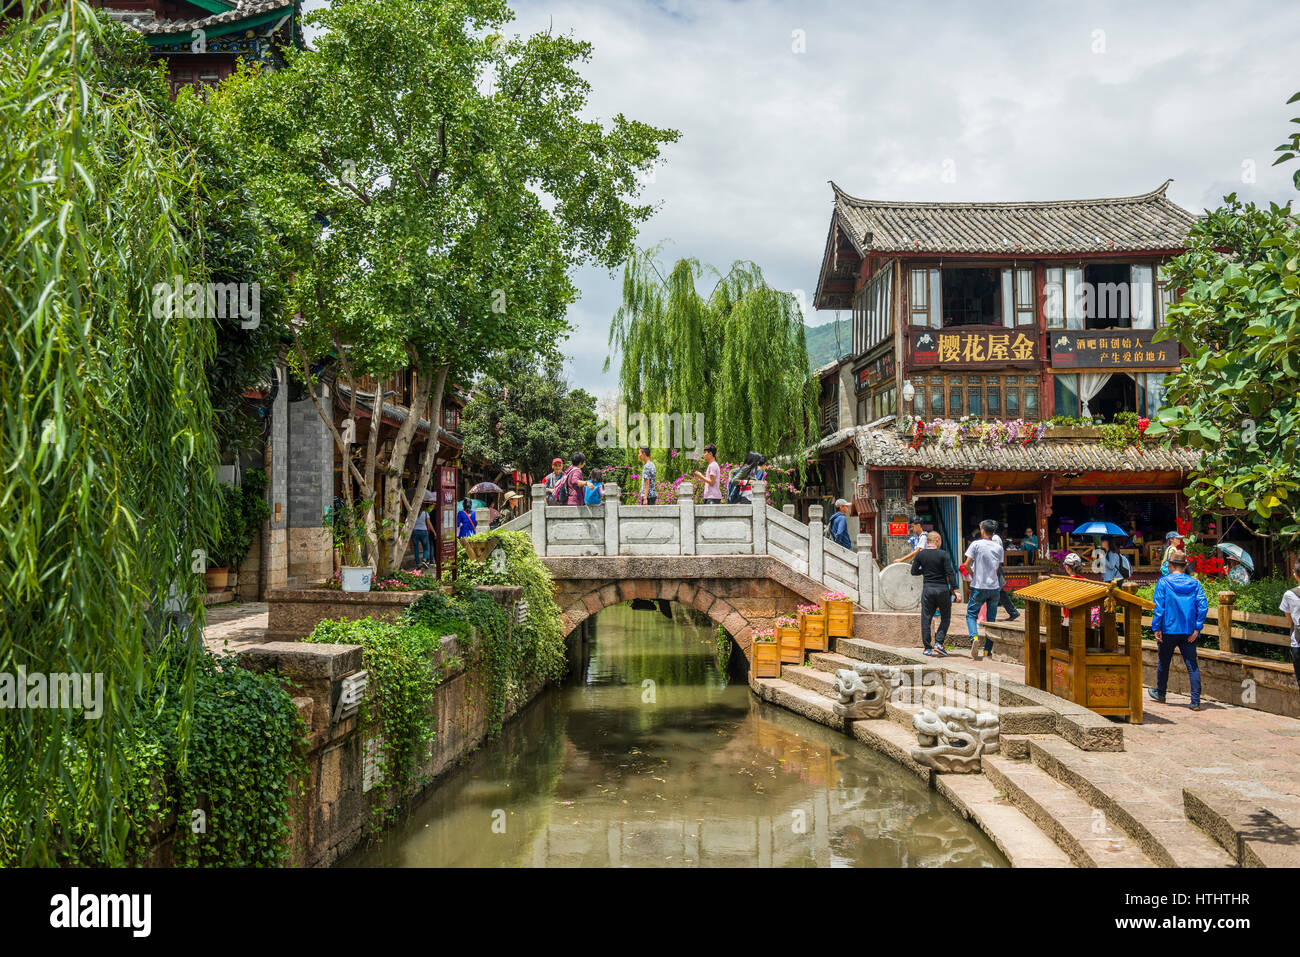 Bridge in Lijiang ancient town, Yunnan, China Stock Photo